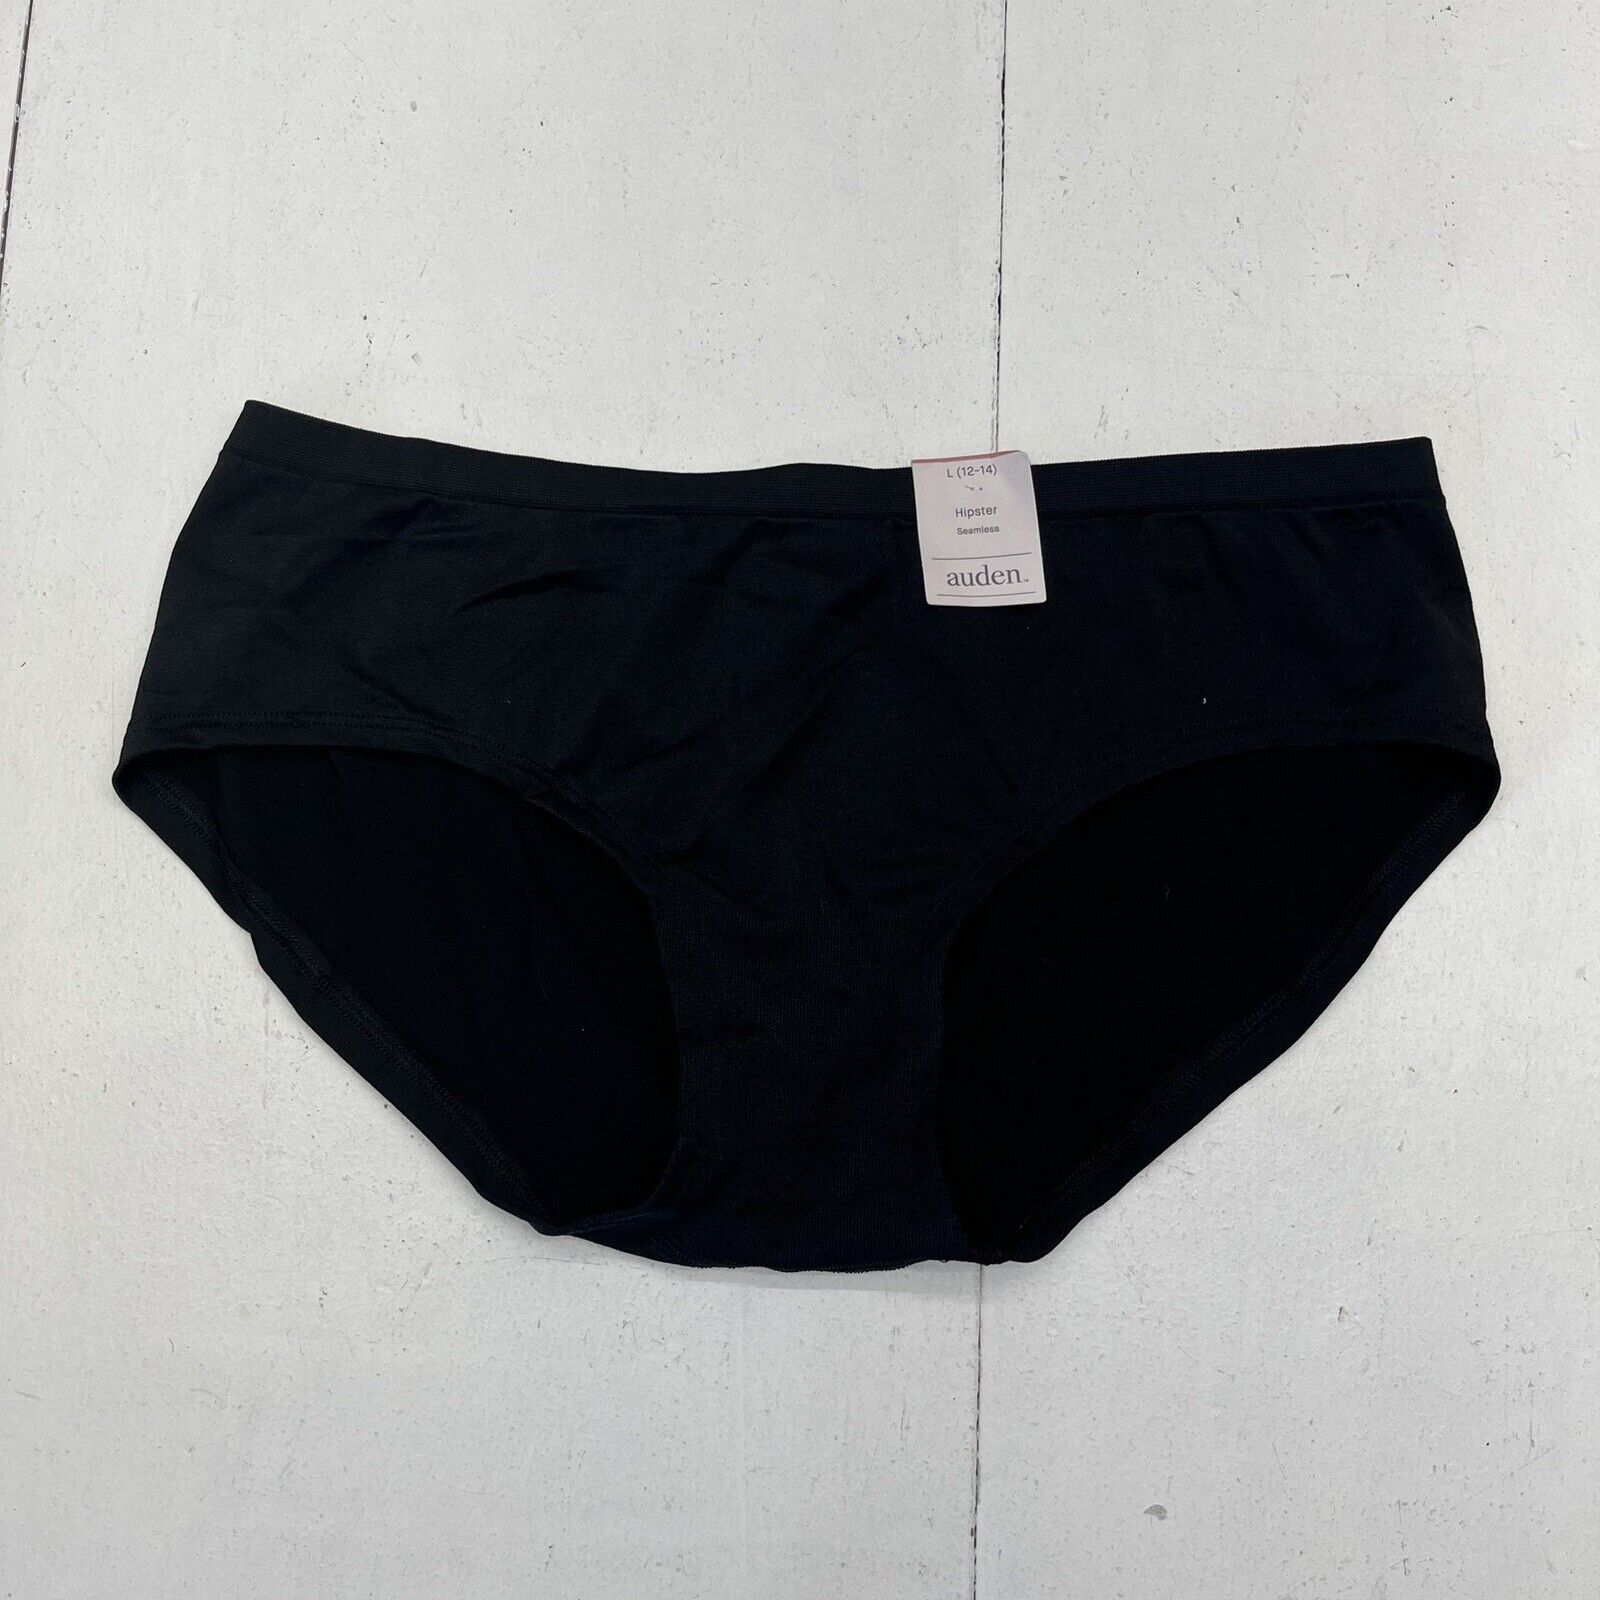 Auden Black Seamless Hipster Underwear Women's Size Large NEW - beyond  exchange